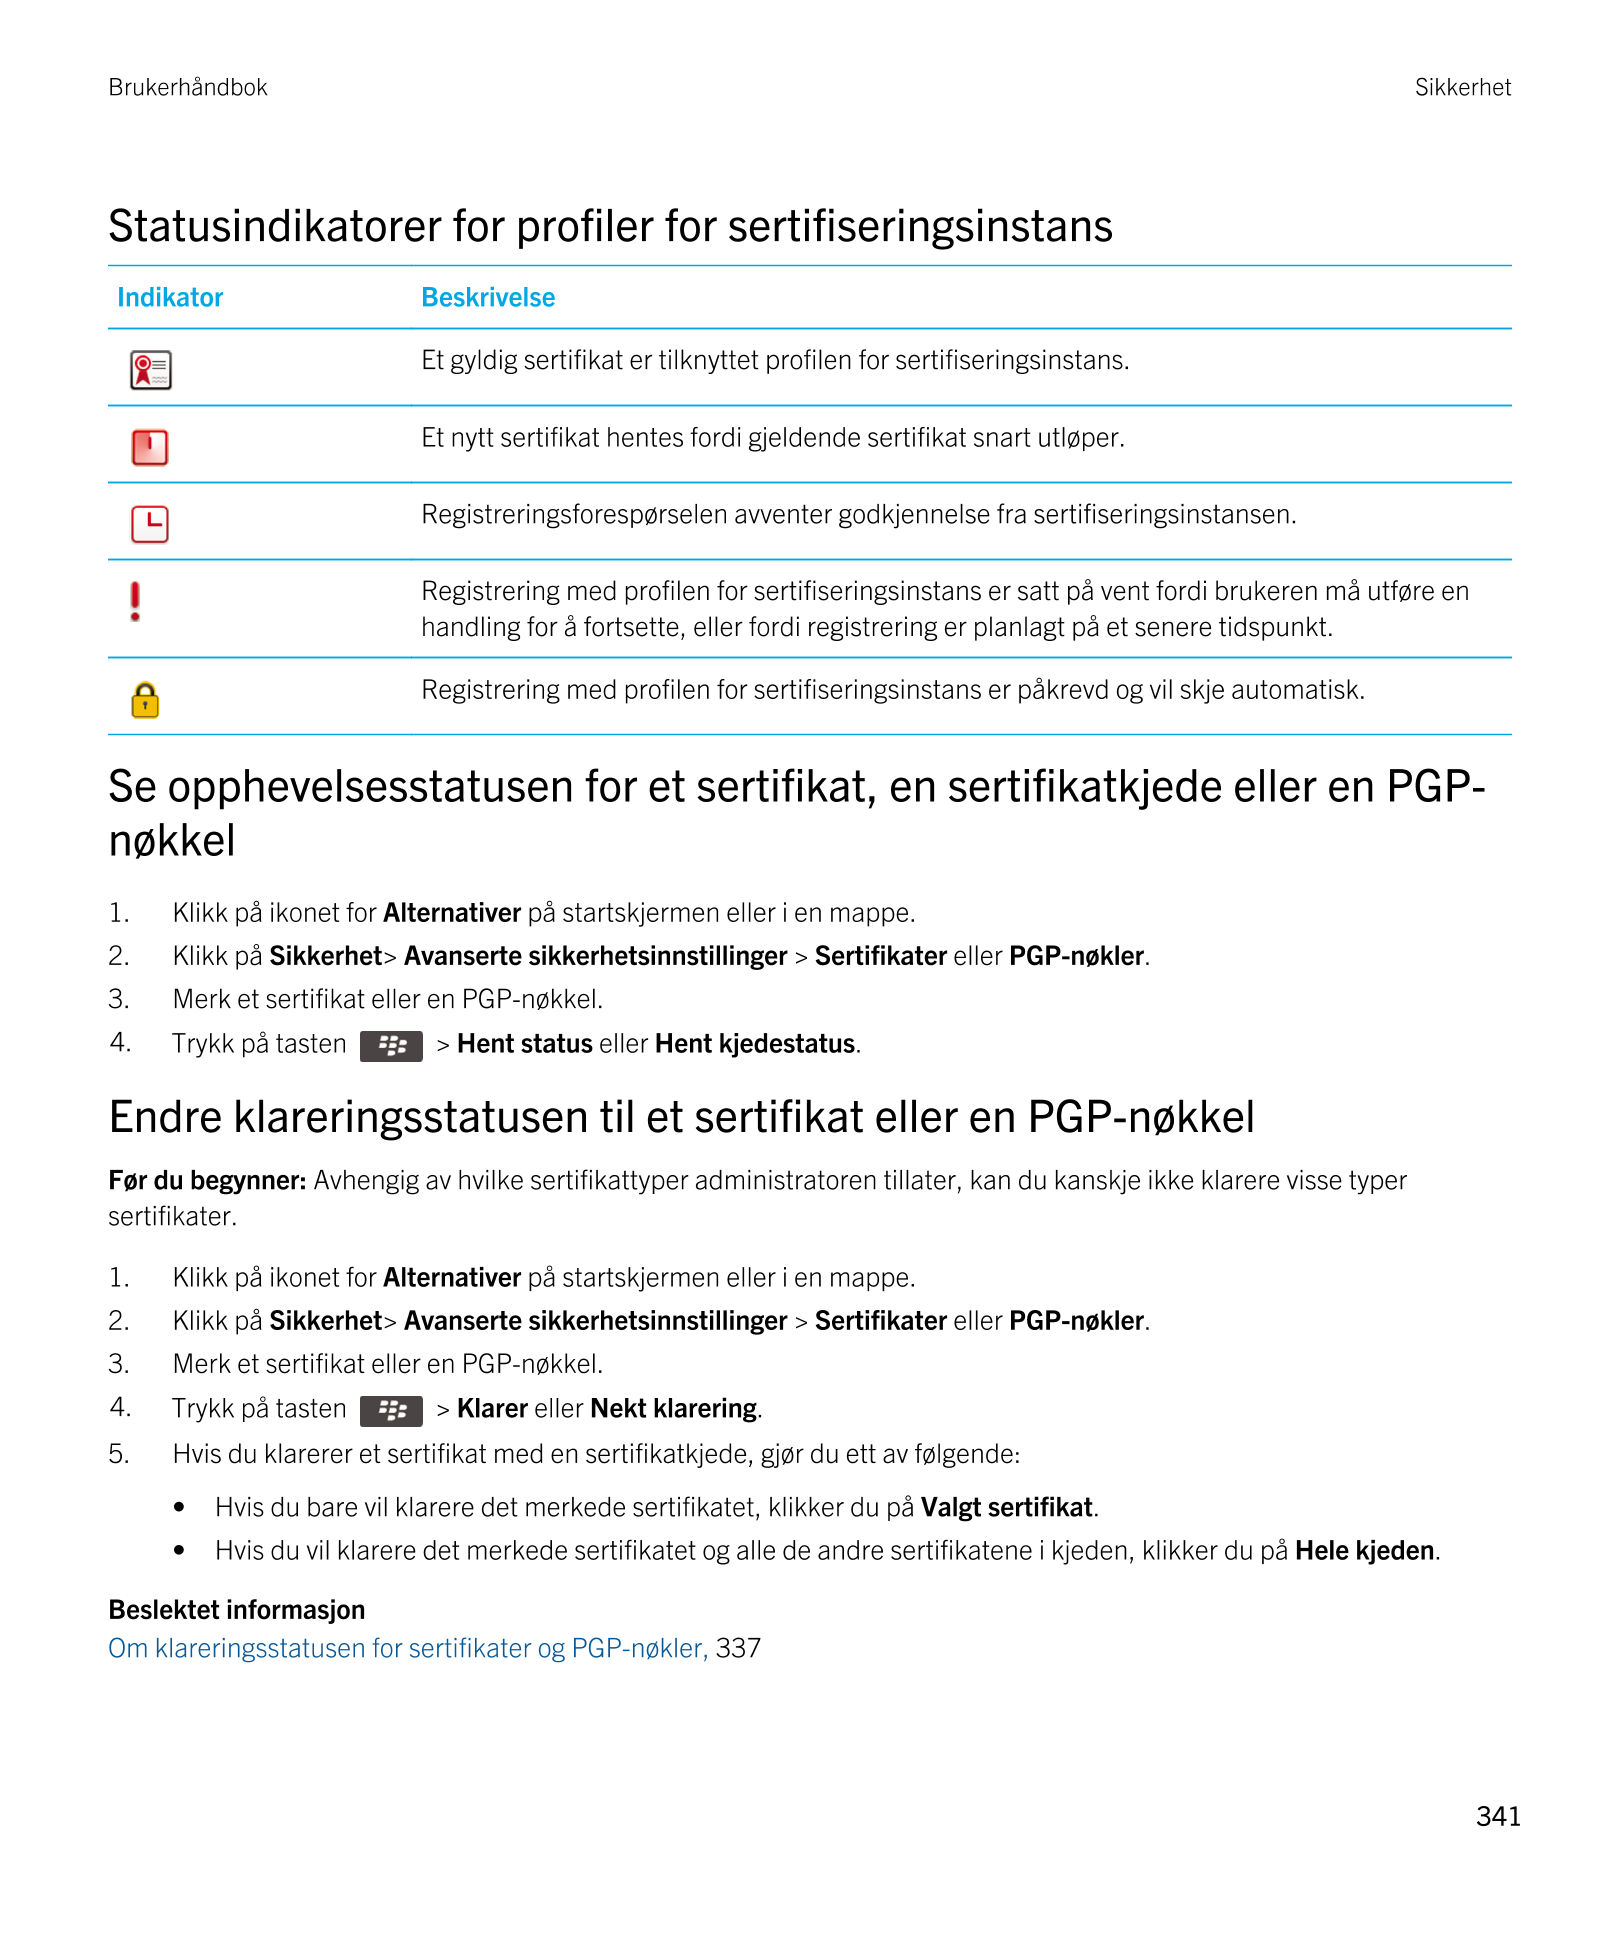 Brukerhåndbok Sikkerhet
Statusindikatorer for profiler for sertifiseringsinstans
Indikator Beskrivelse 
  Et gyldig sertifikat e